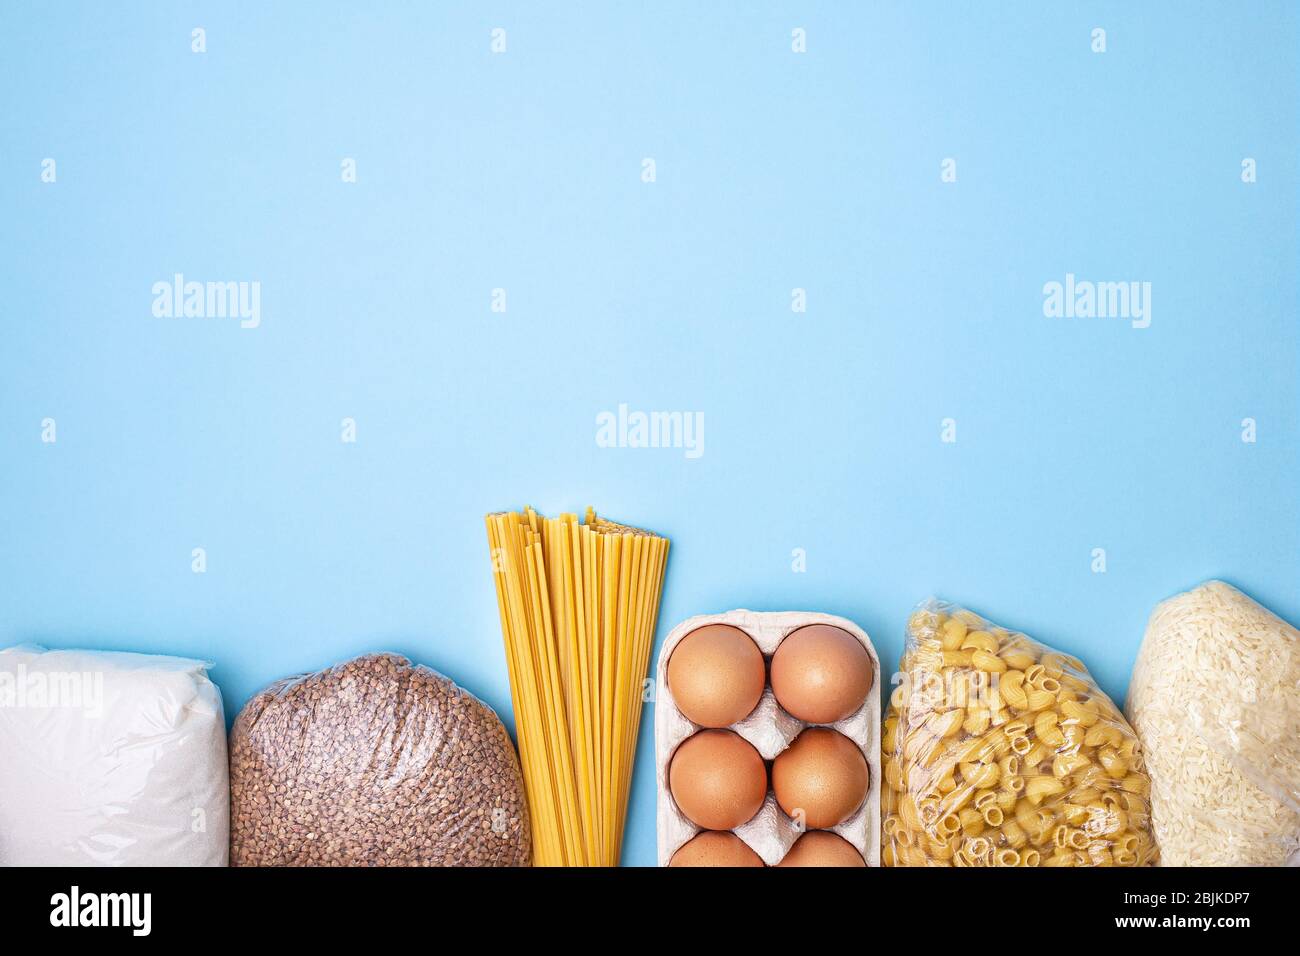 Lieferkost. Reis, Buchweizen, Nudeln, Dosenfutter, Zucker auf blauem Hintergrund. Sammeln Sie freiwillig Lebensmittel. Spende, Quarantäne des Coronavirus. Speisenangebot Stockfoto